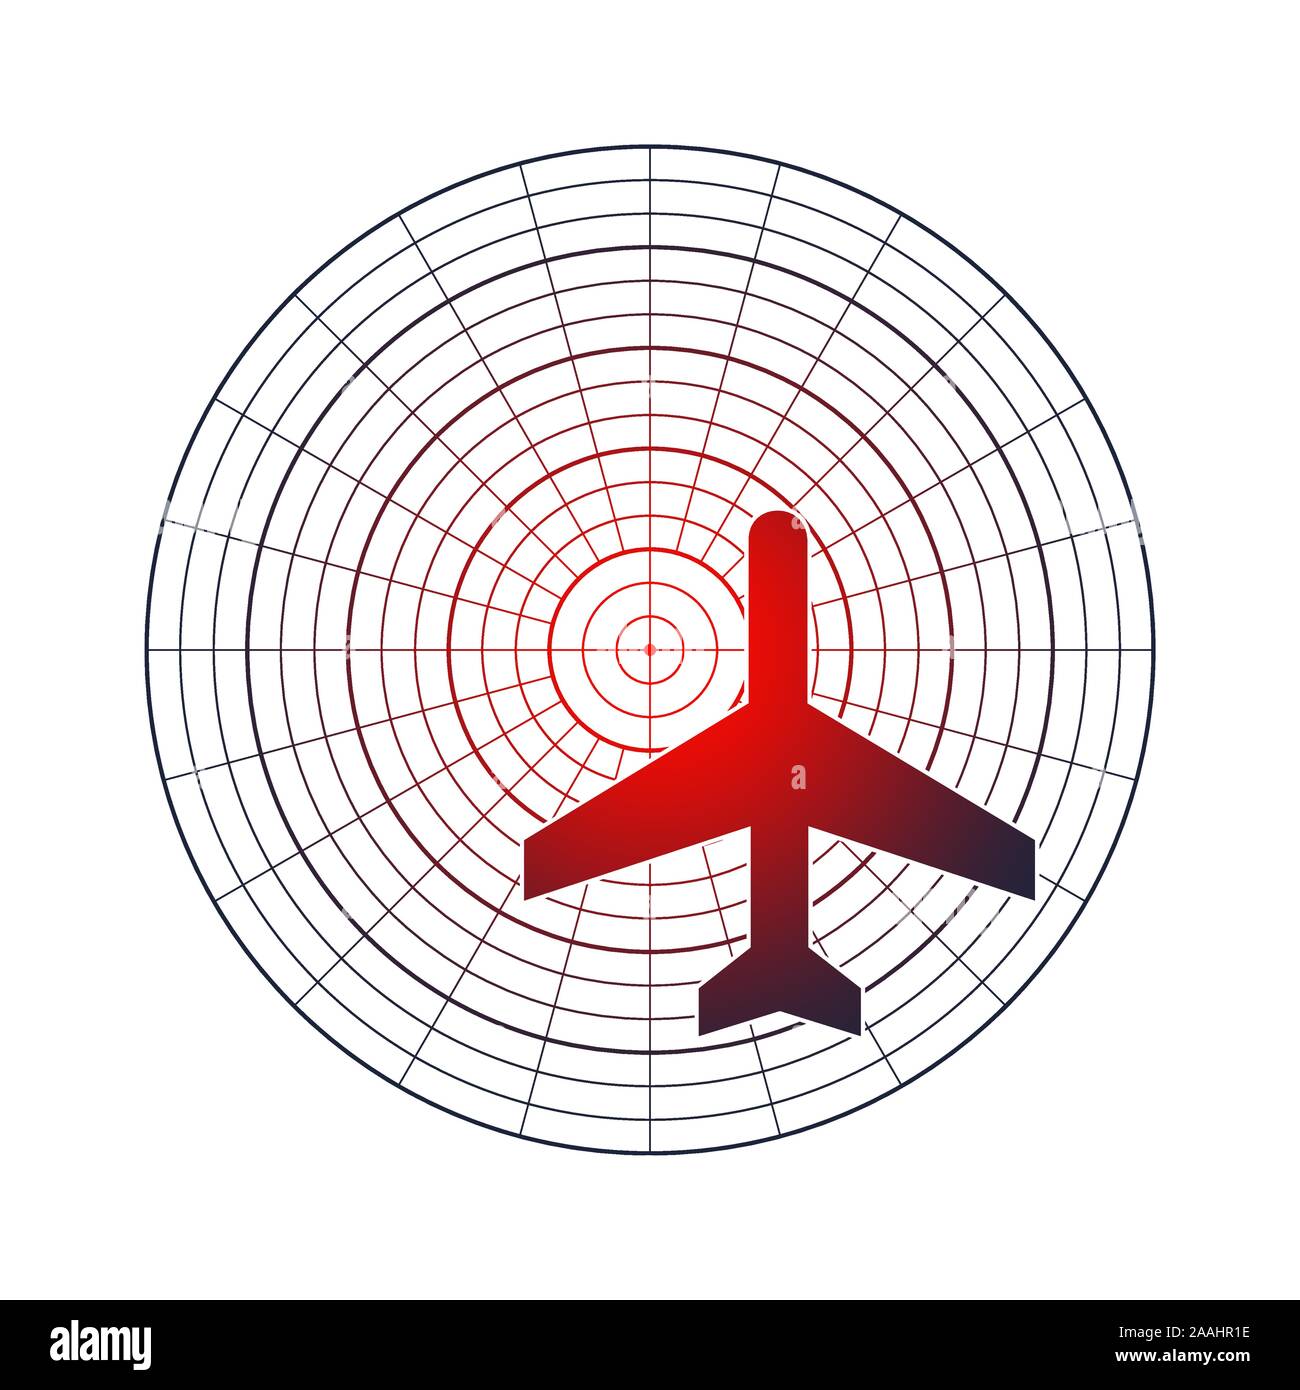 Flugzeug Silhouette am Radarschirm. Konzept der Aviation Technology Stock Vektor